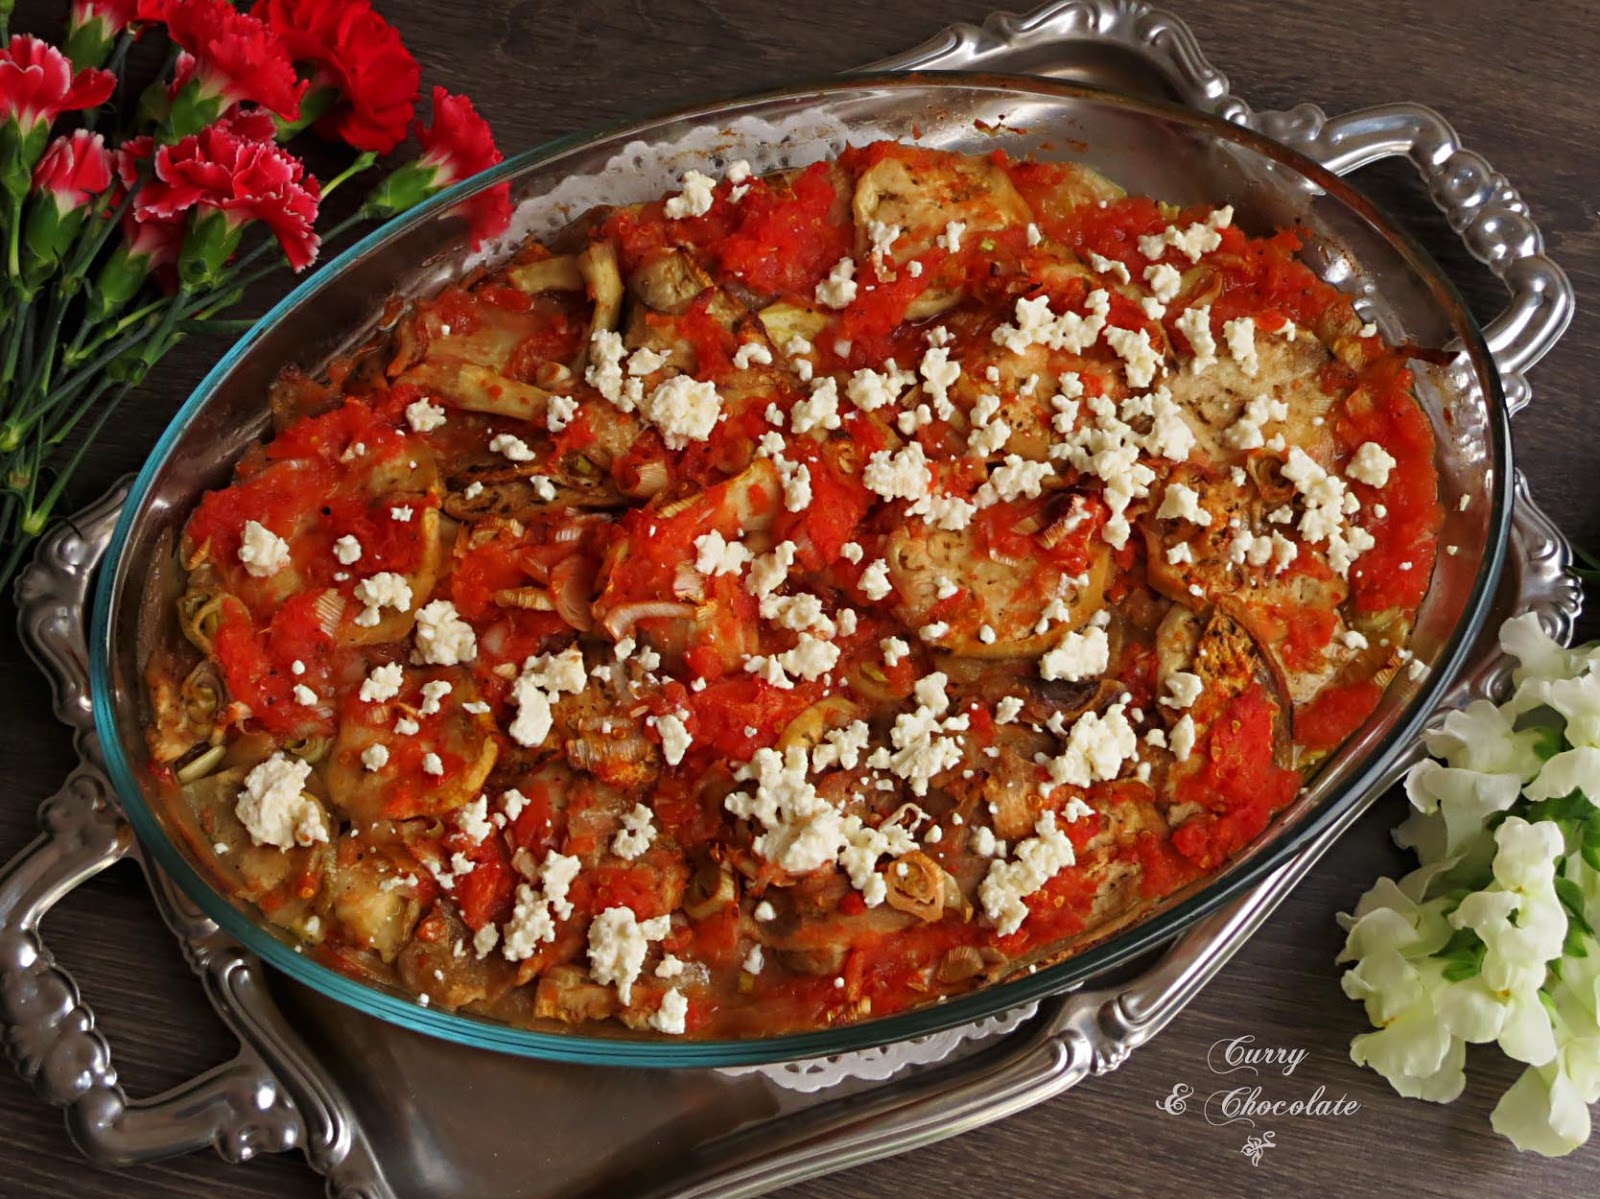 Briam griego o verduras asadas – Greek Briam (oven baked vegetables)